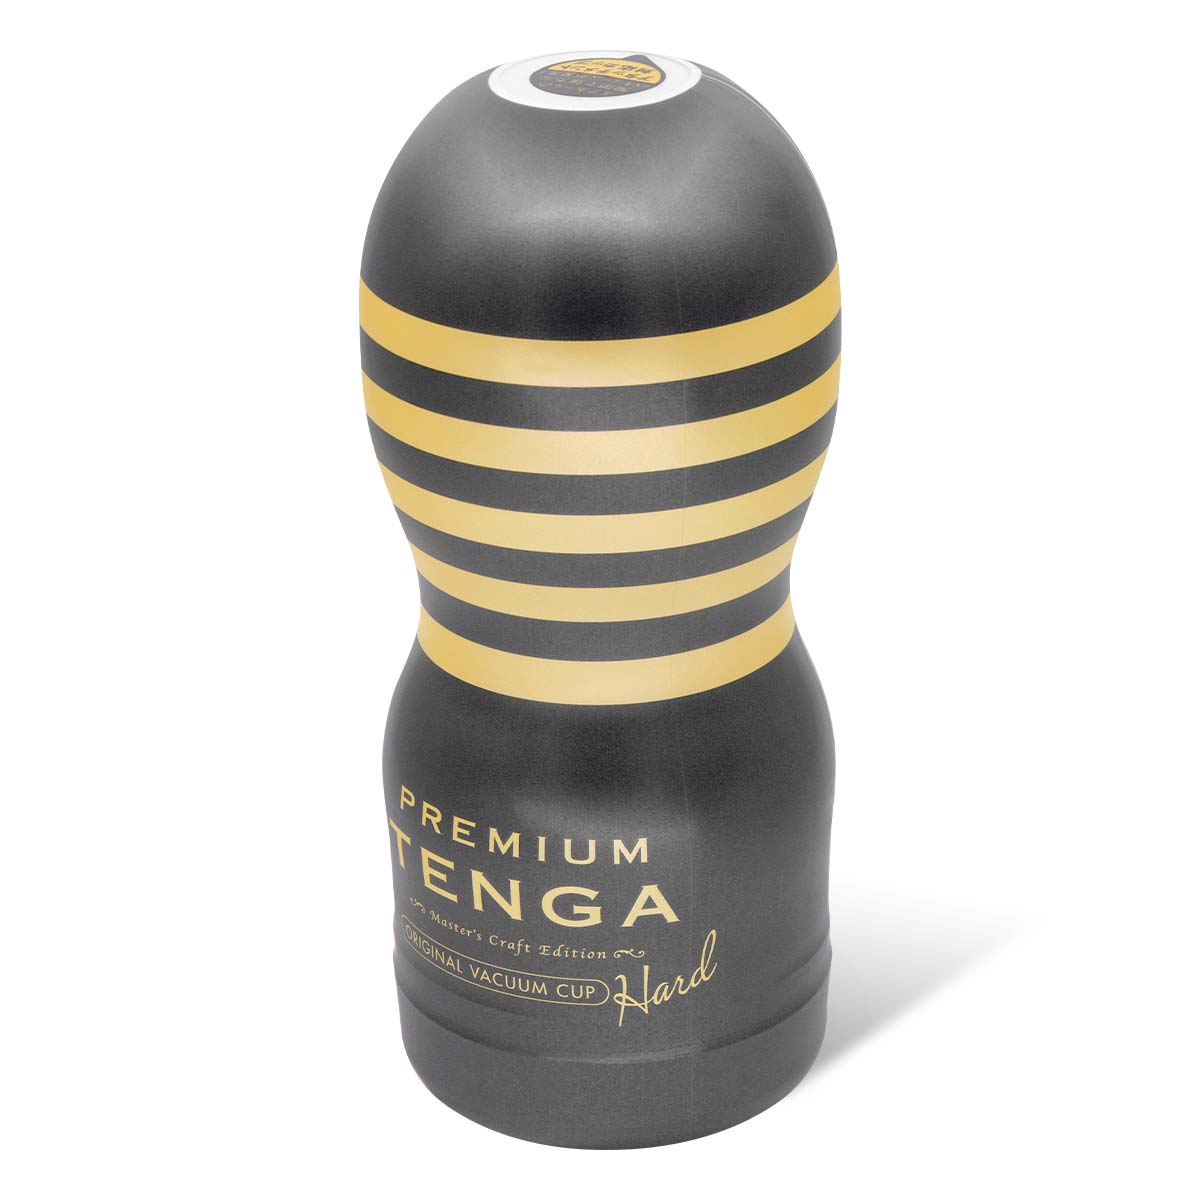 テンガ TOC-201PH PREMIUM TENGA ORIGINAL VACUUM CUP 2nd Generation 